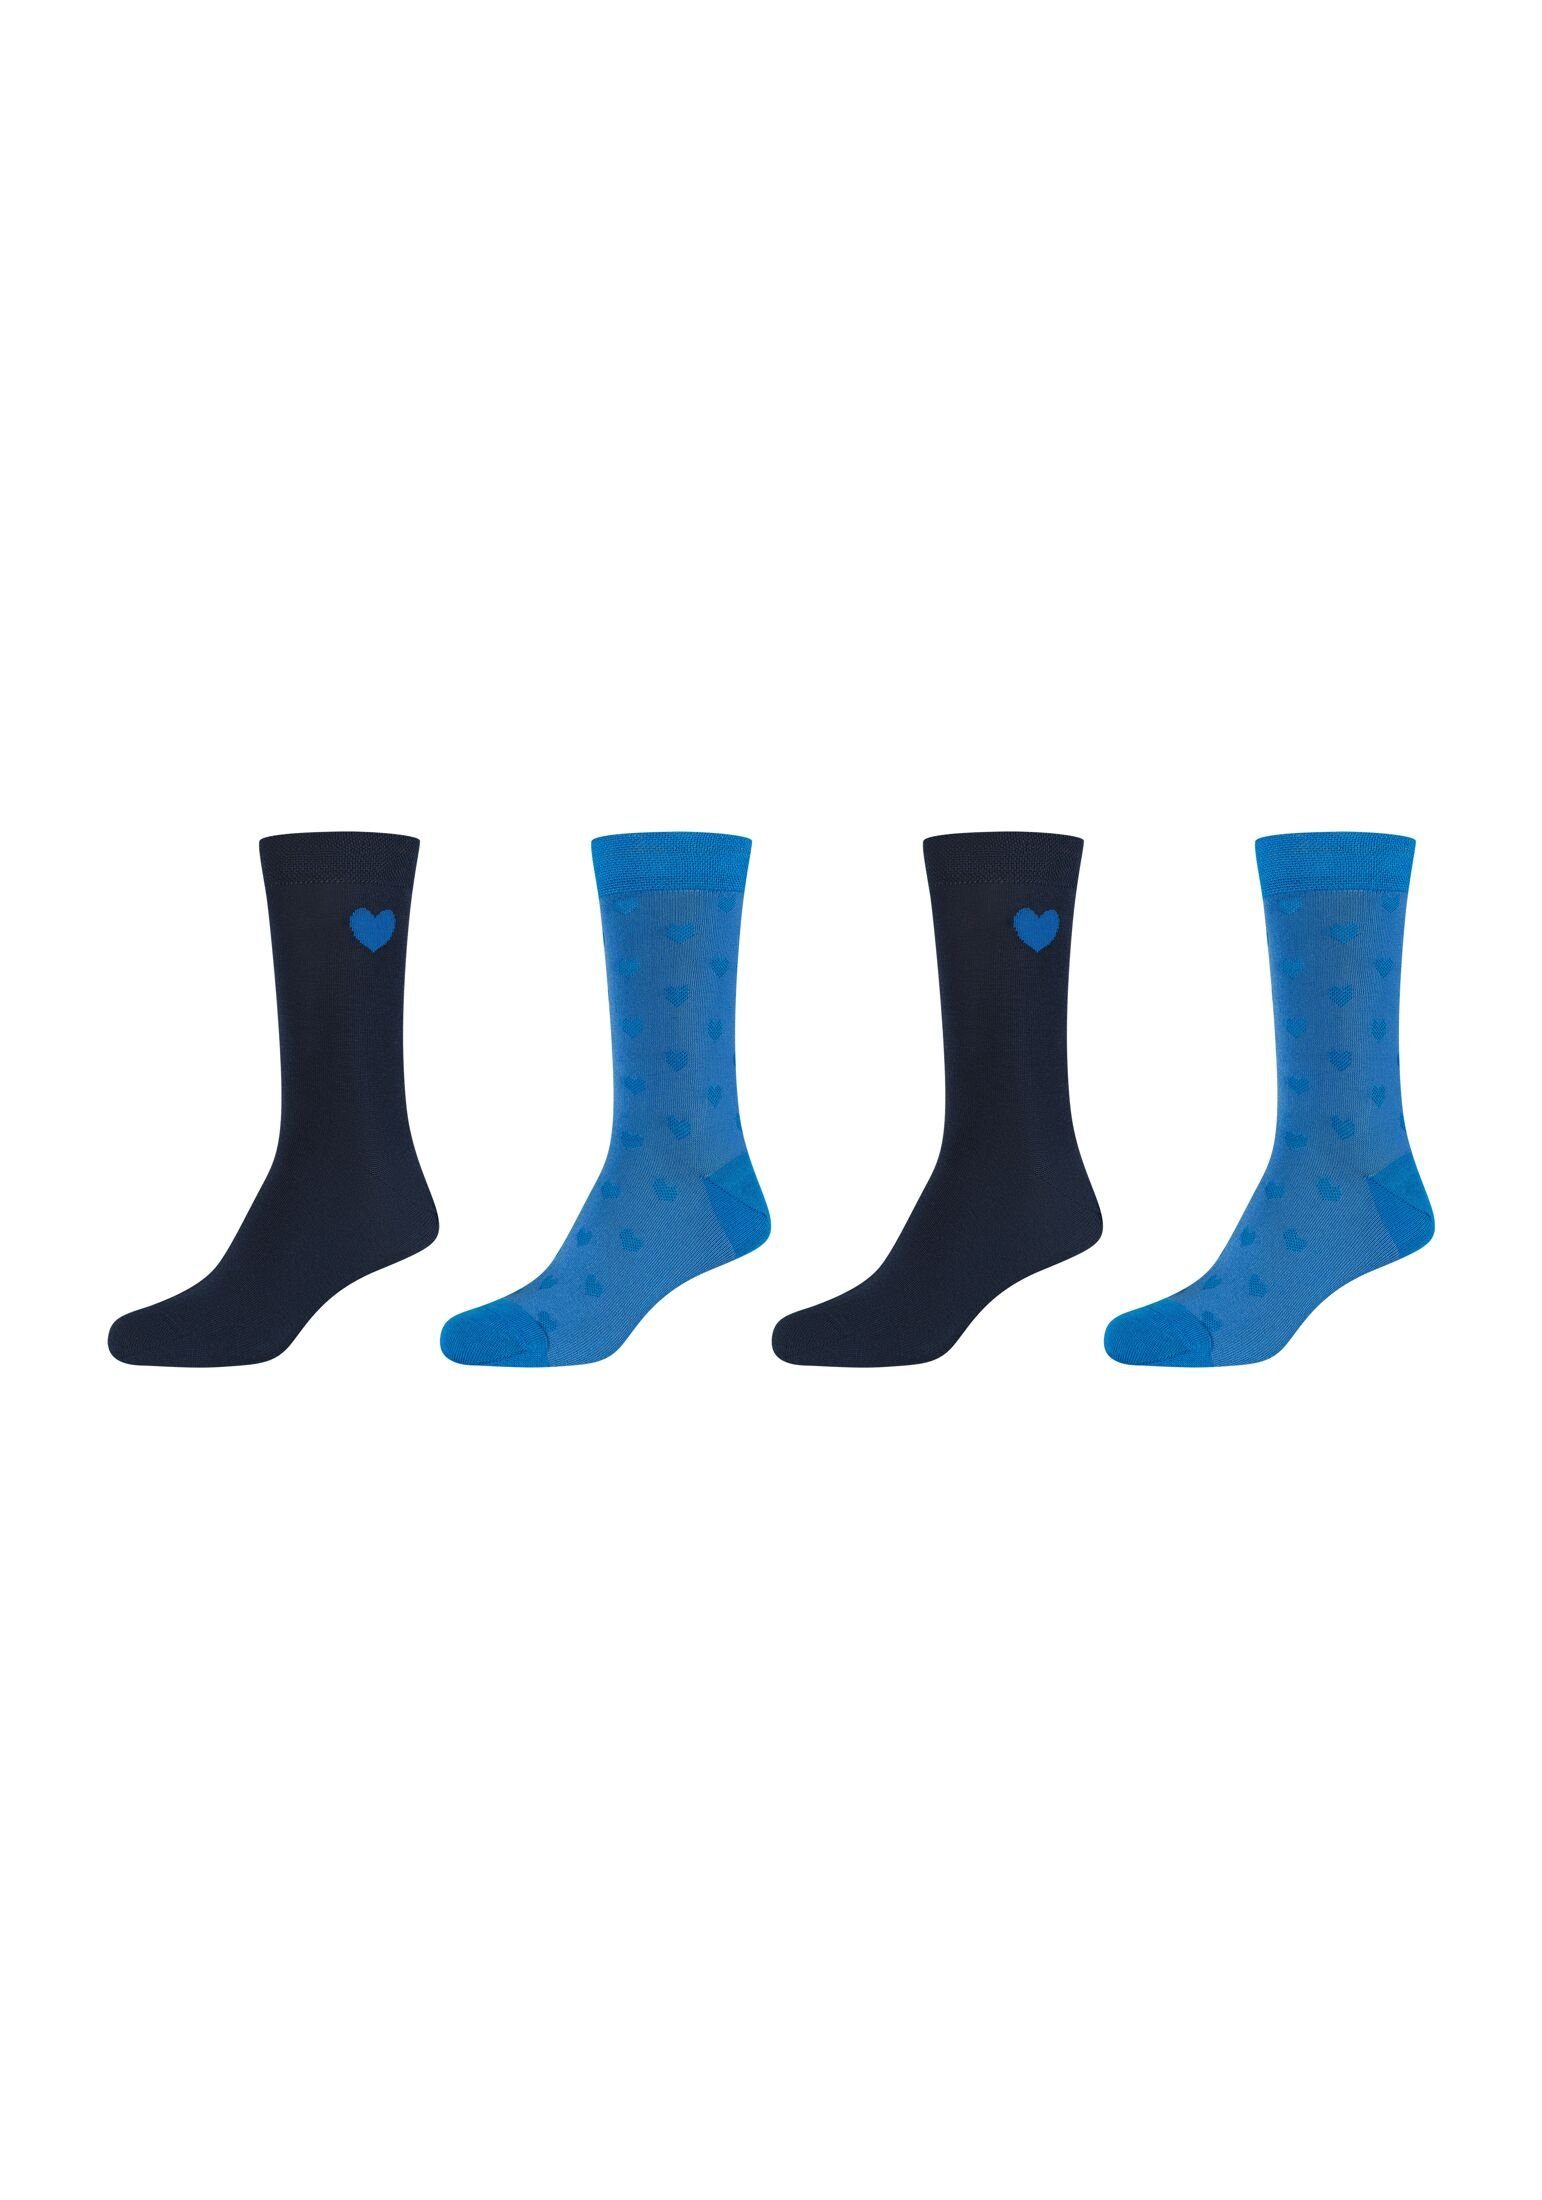 Camano Socken gekämmter Socken 4er Pack, Anteil hoher Atmungsaktiv: Baumwolle an